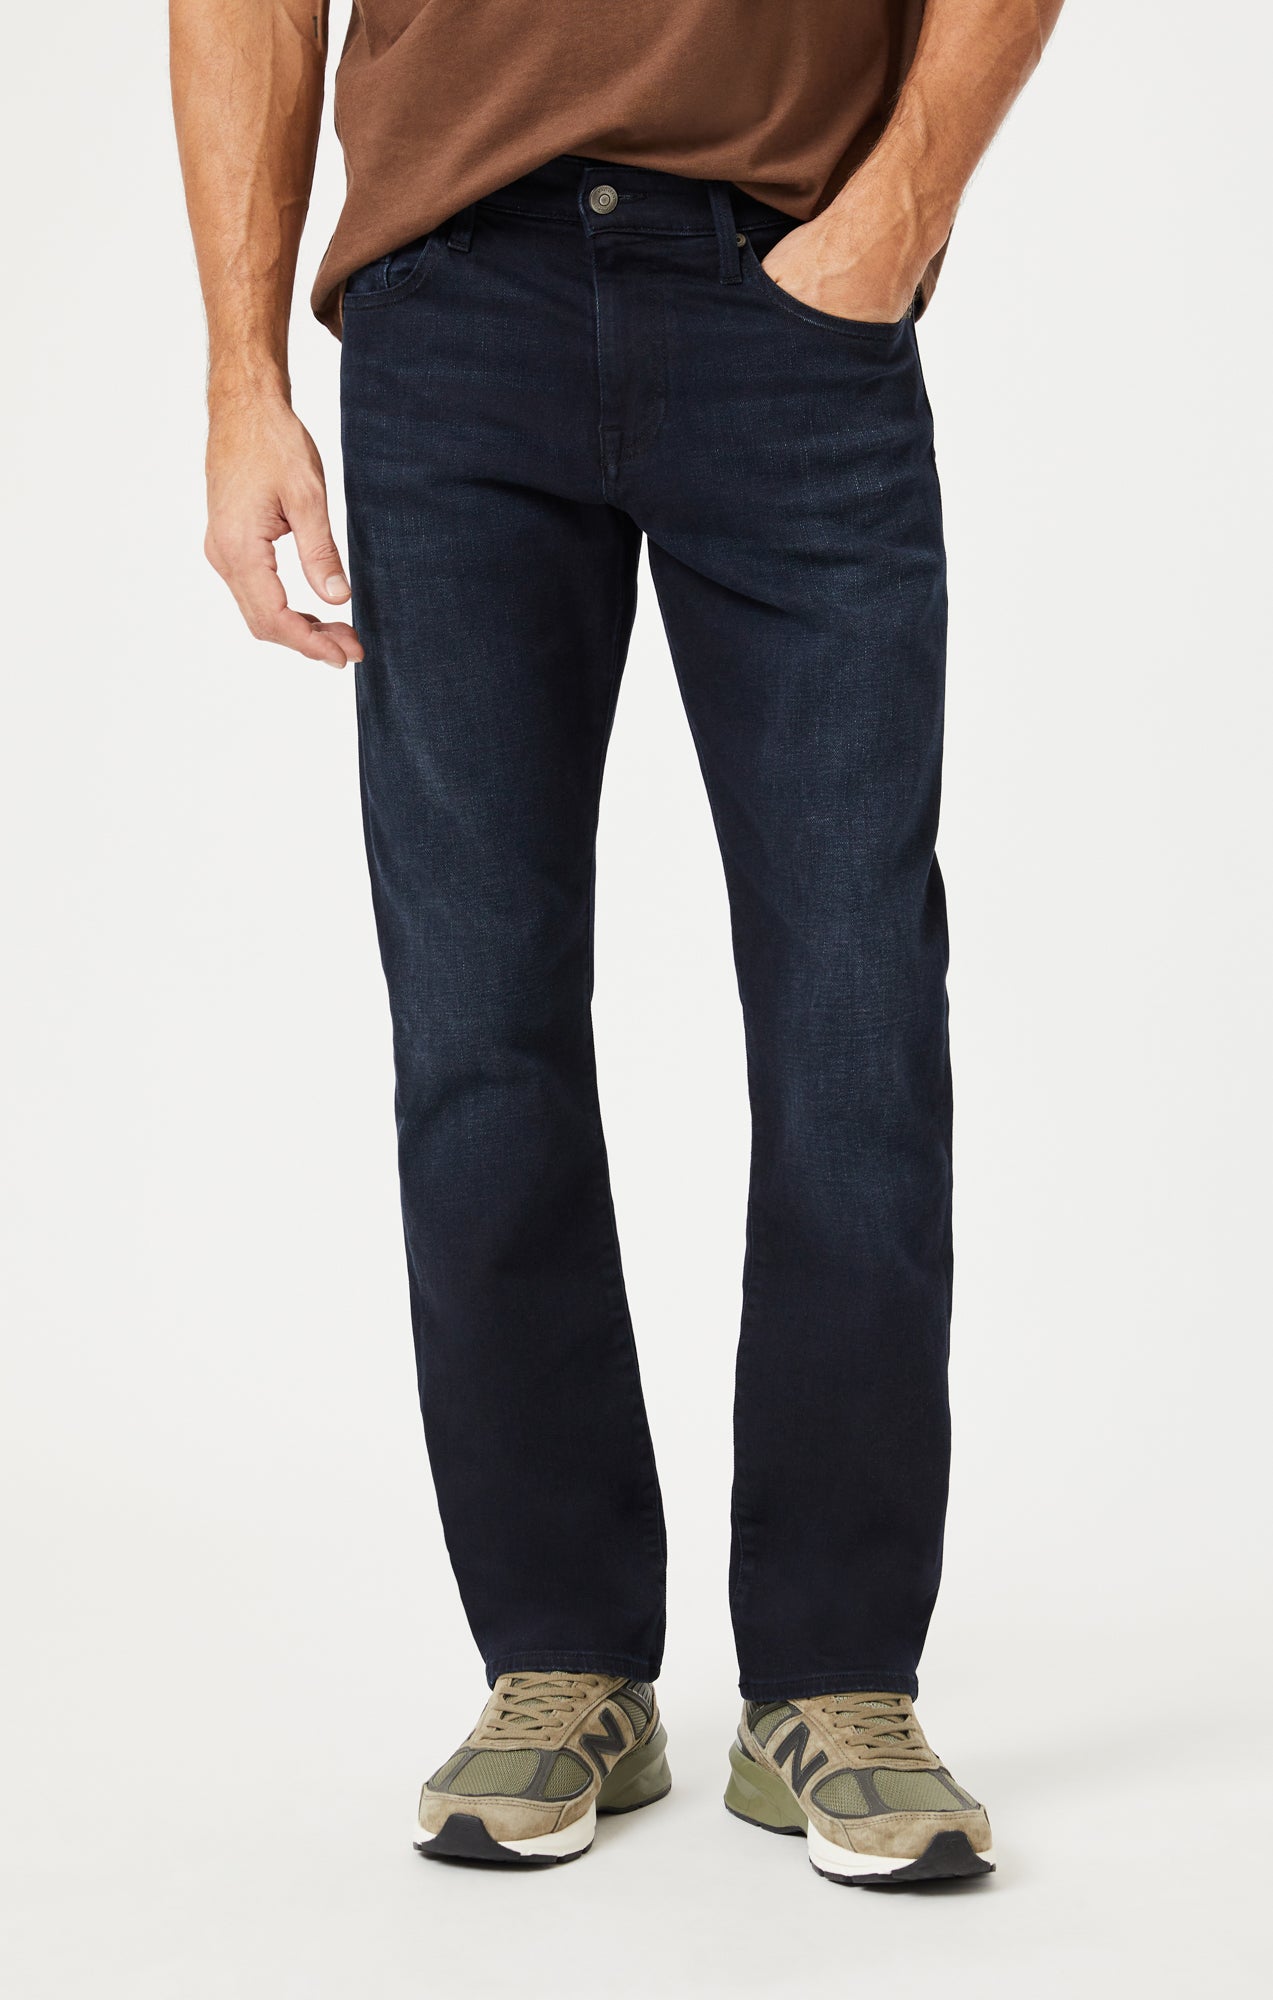 Wrangler Jeans Mens 33X30 Blue Straight Leg Denim Mid Rise Relaxed Fit